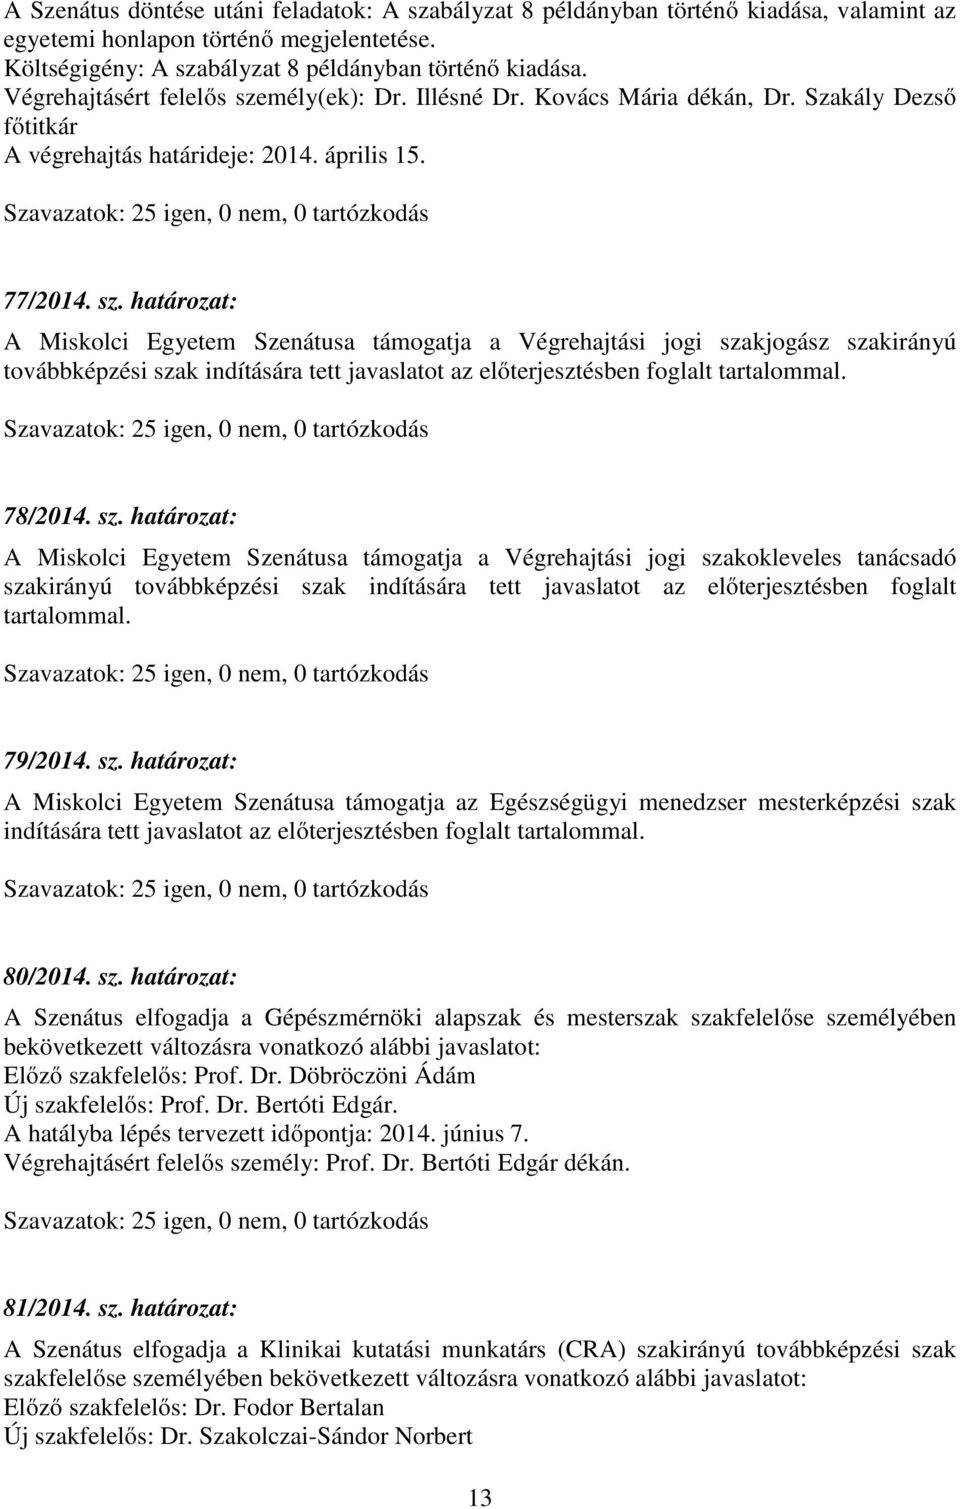 mély(ek): Dr. Illésné Dr. Kovács Mária dékán, Dr. Szakály Dezső főtitkár A végrehajtás határideje: 2014. április 15. 77/2014. sz.